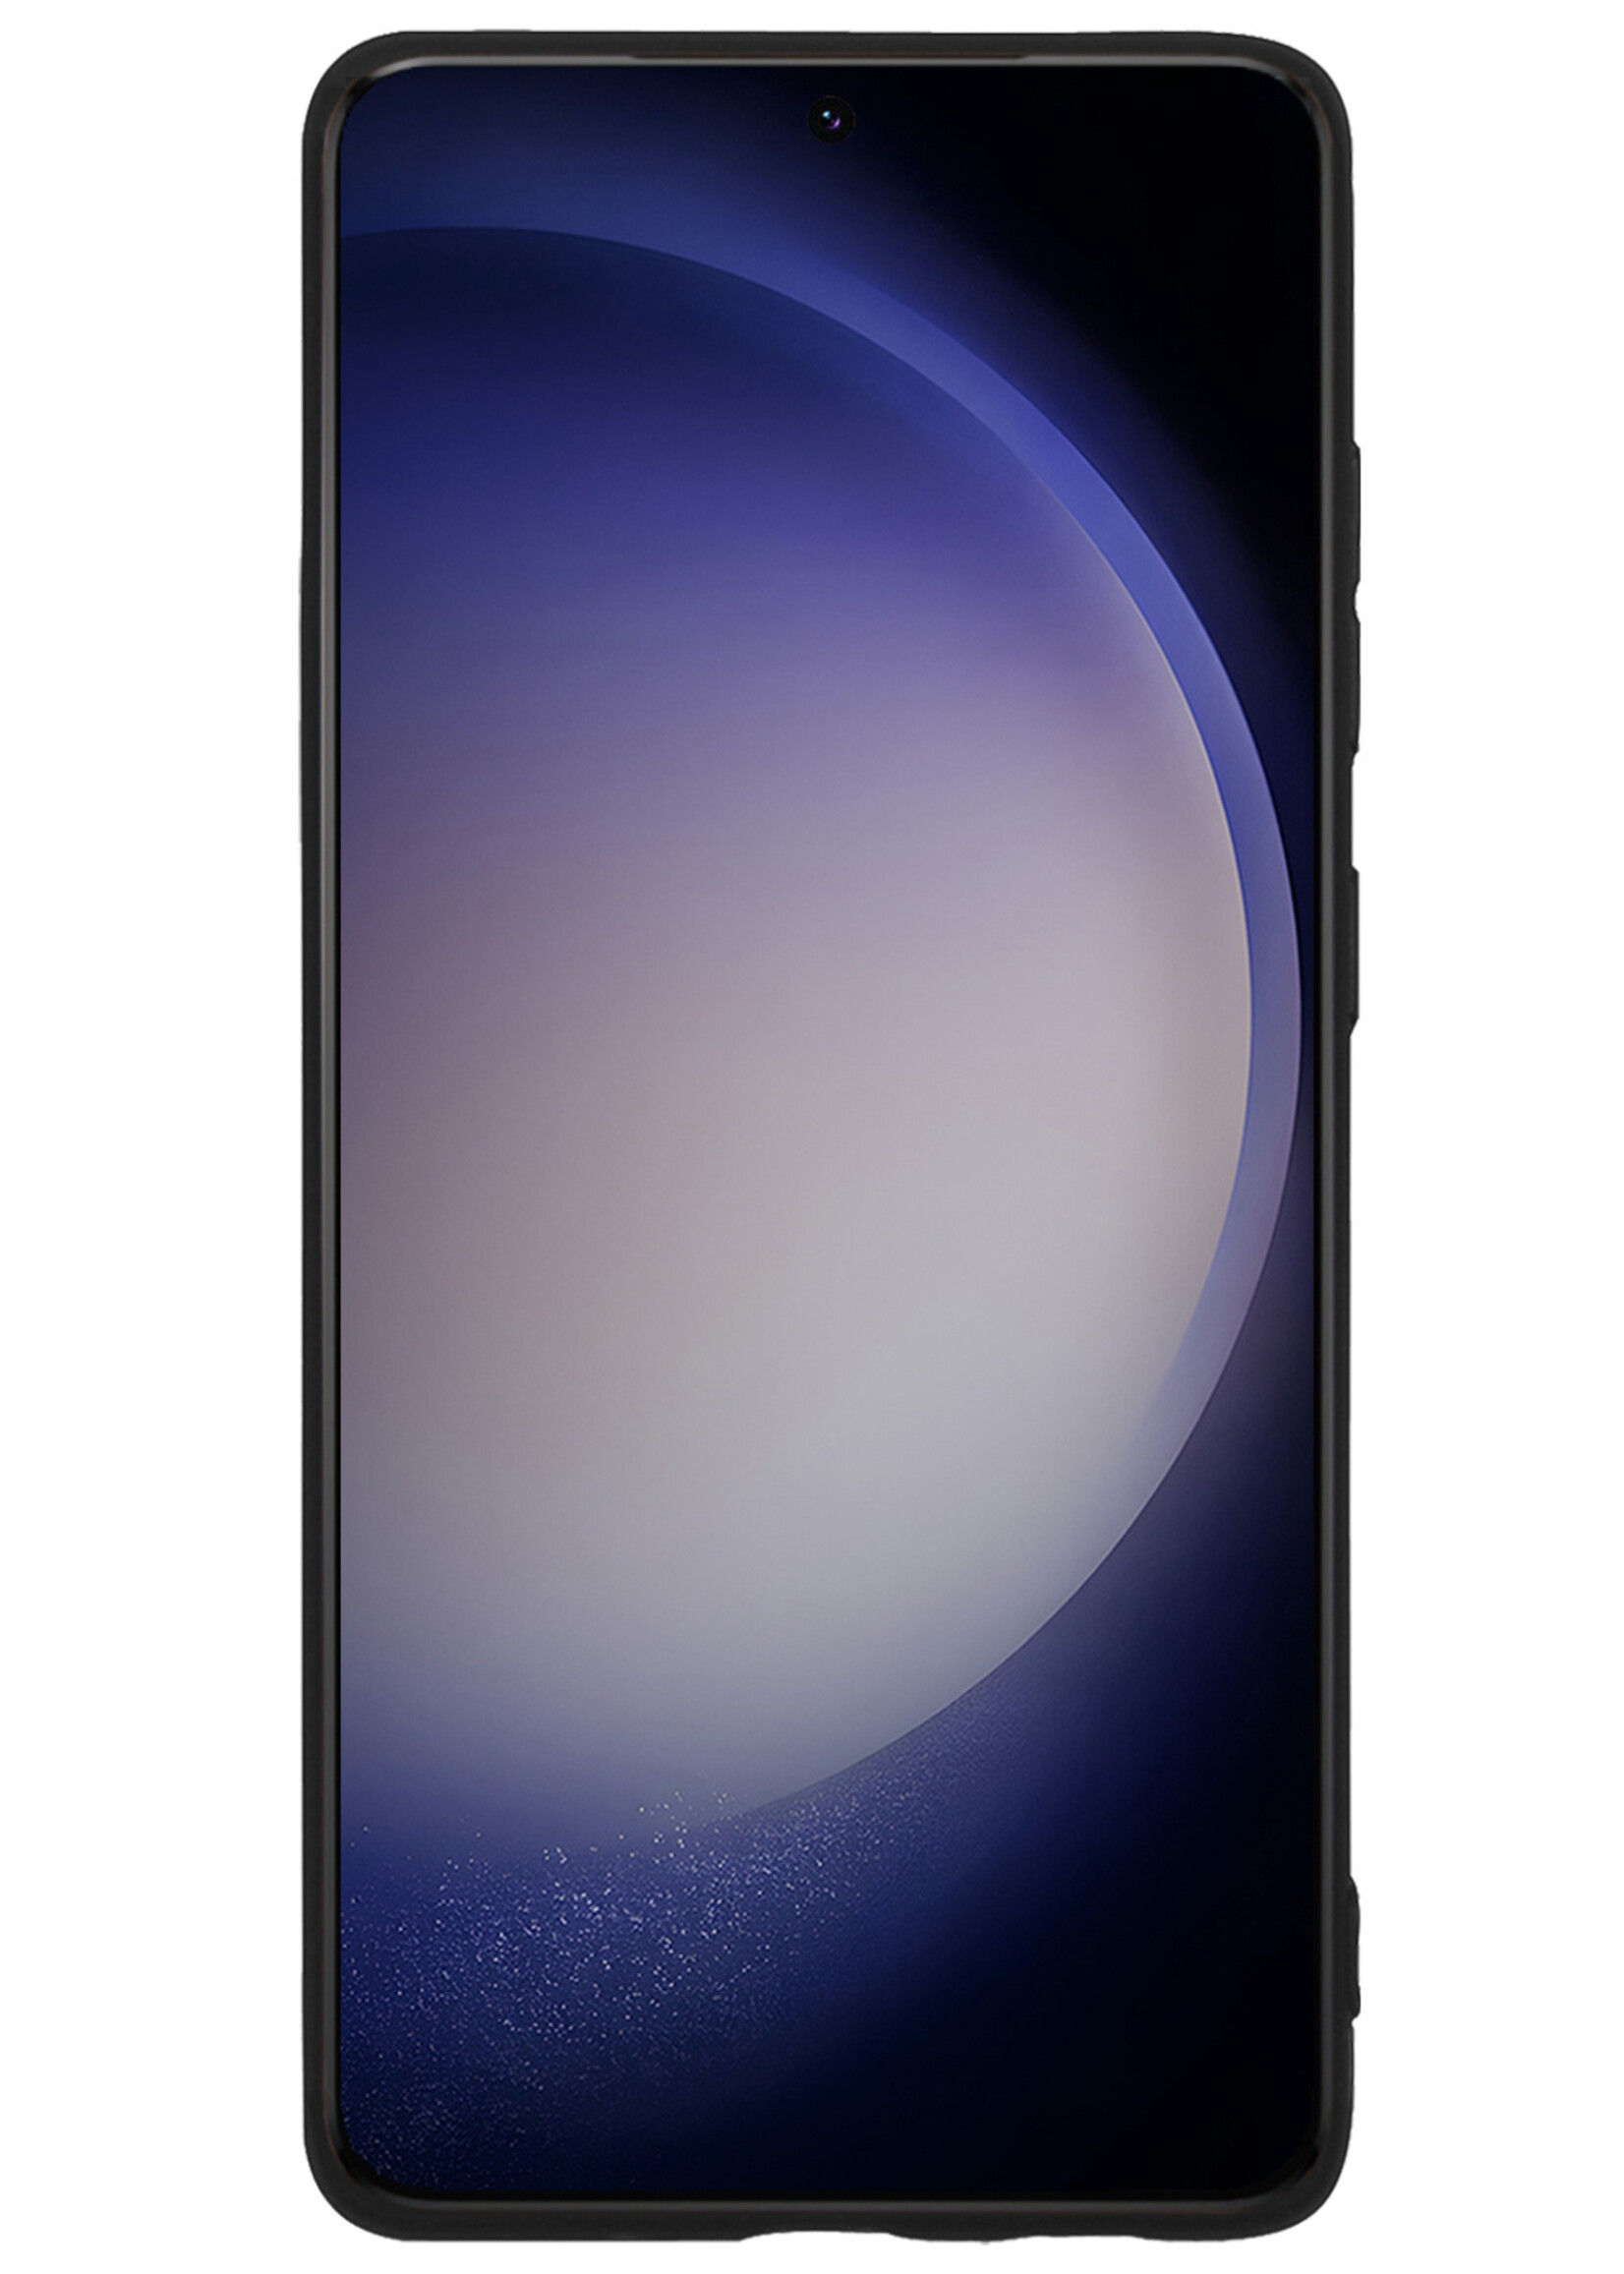 BTH Hoesje Geschikt voor Samsung S23 Ultra Hoesje Siliconen Case Hoes - Hoes Geschikt voor Samsung Galaxy S23 Ultra Hoes Cover Case - Zwart - 2 PACK